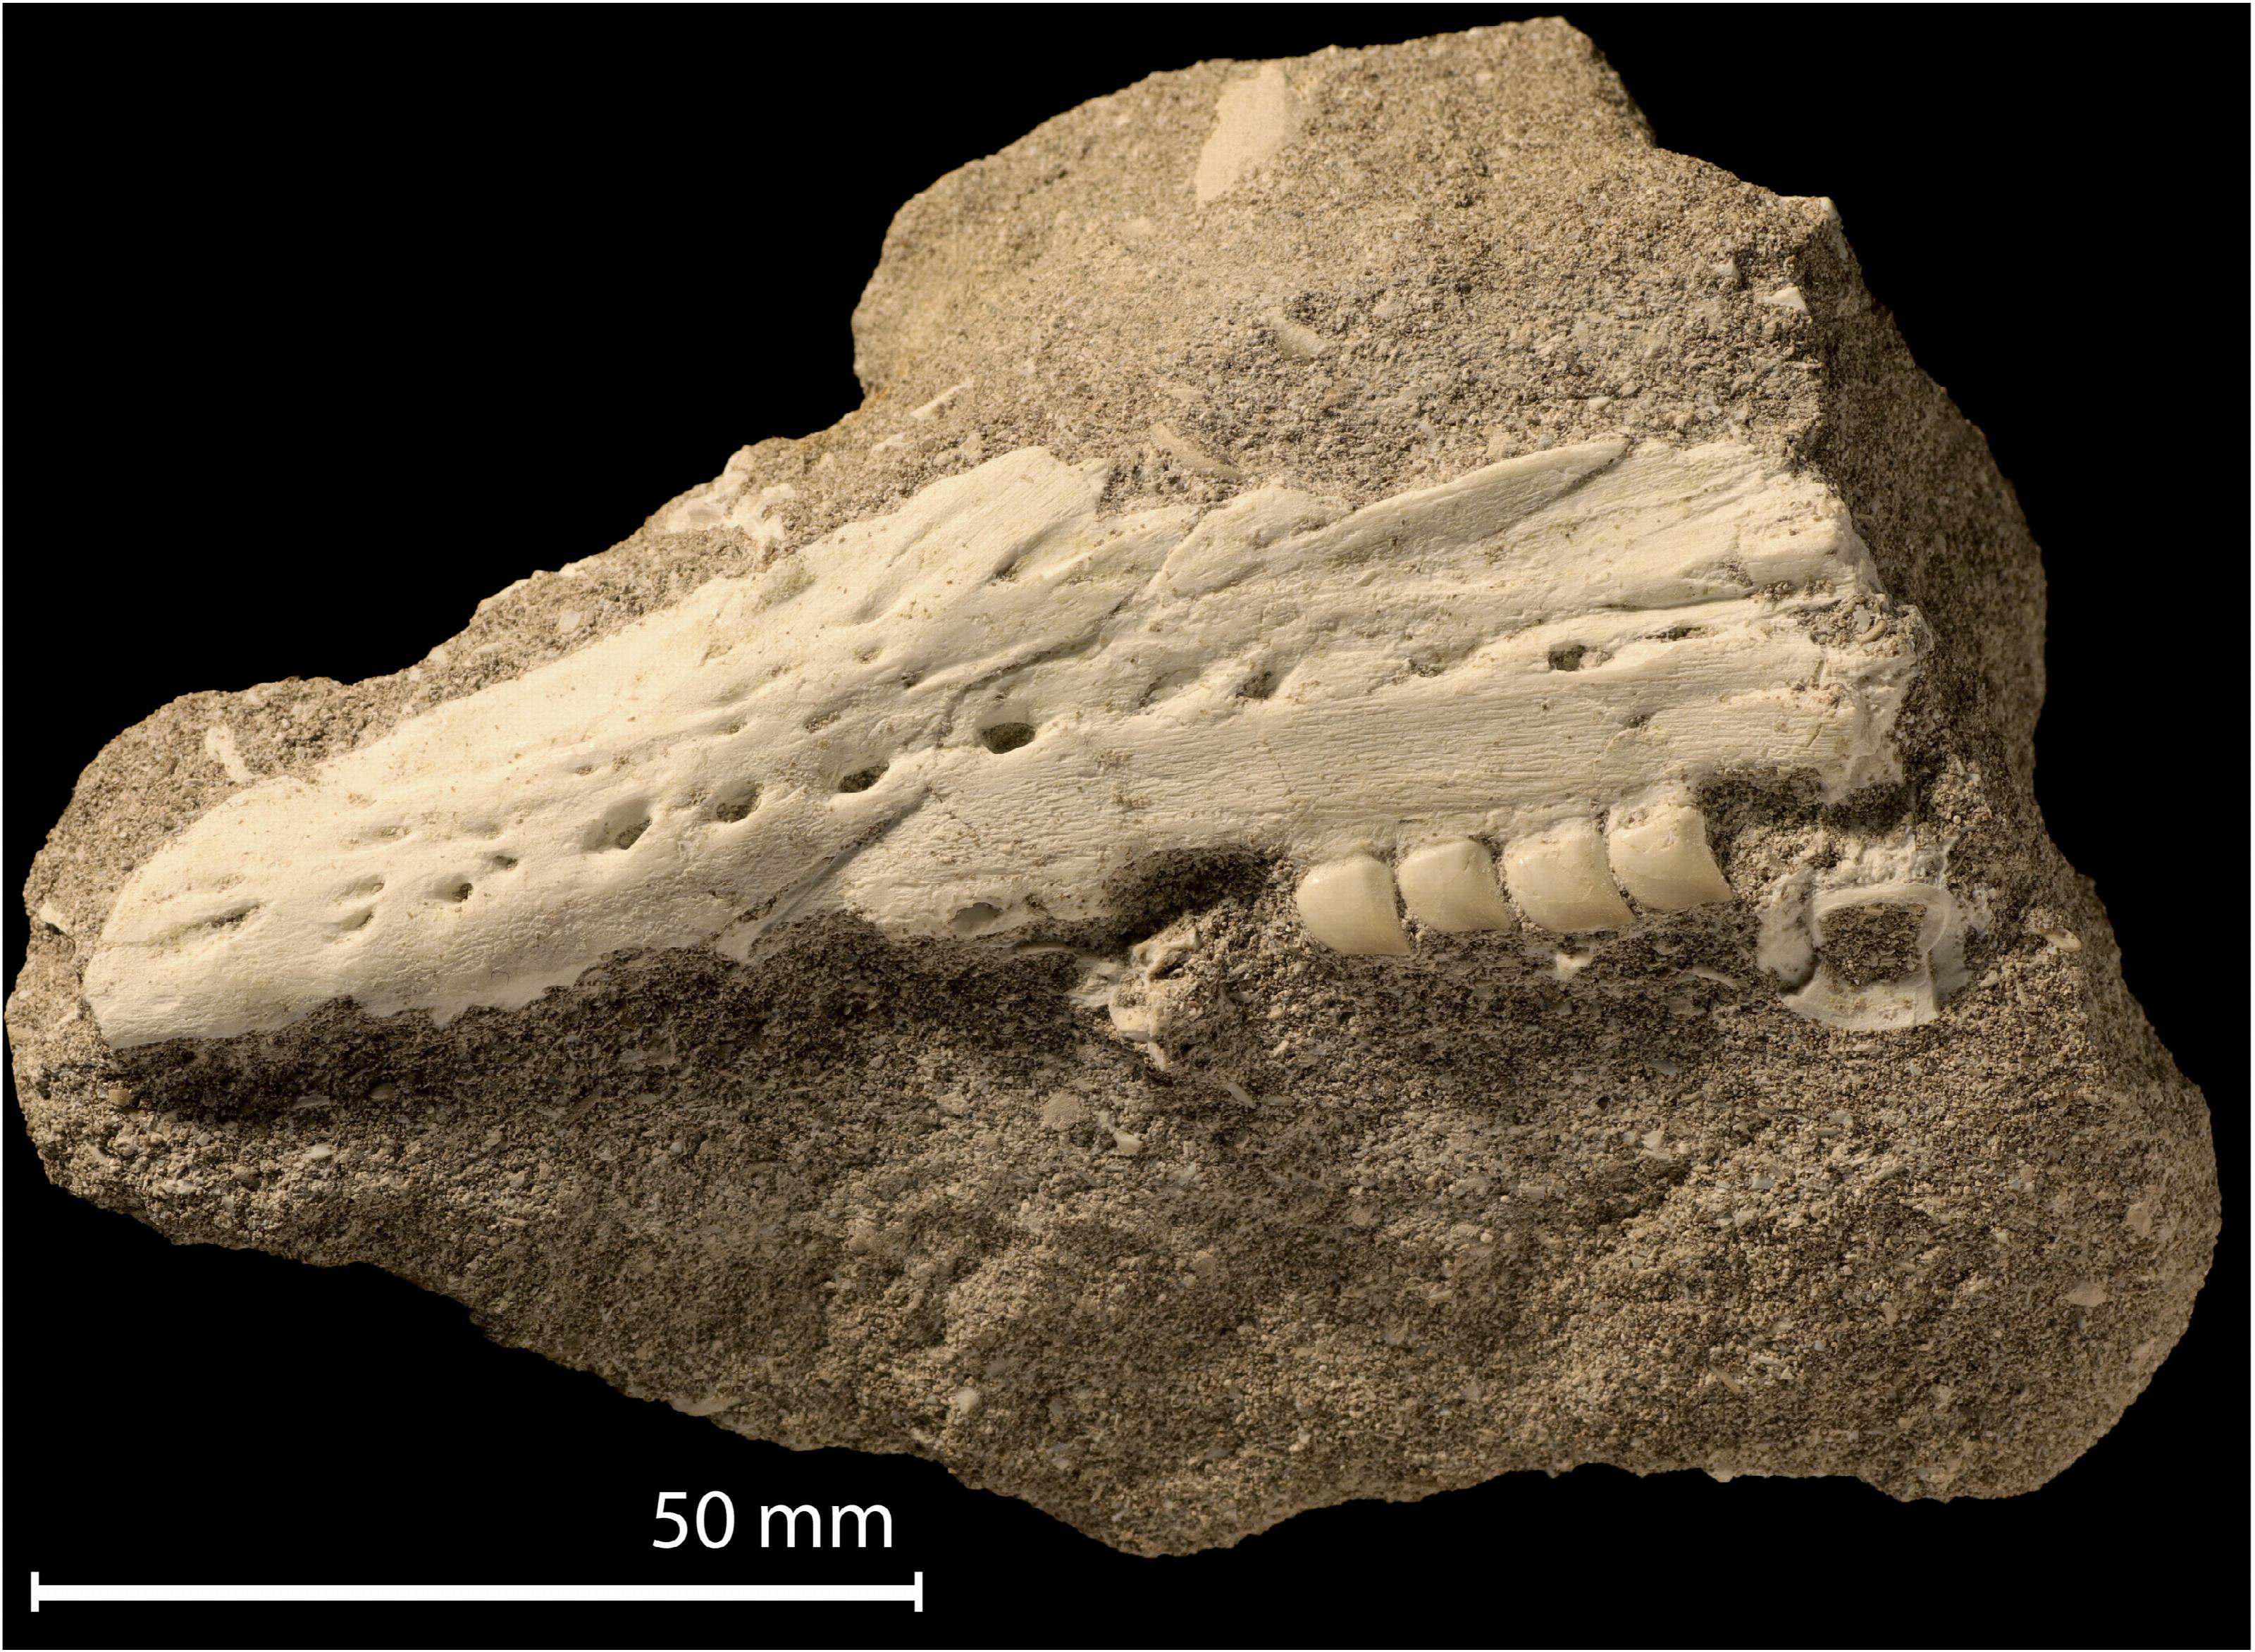 De linker bovenkaak van de nieuwe mosasaurus-soort Xenodens calminechari.